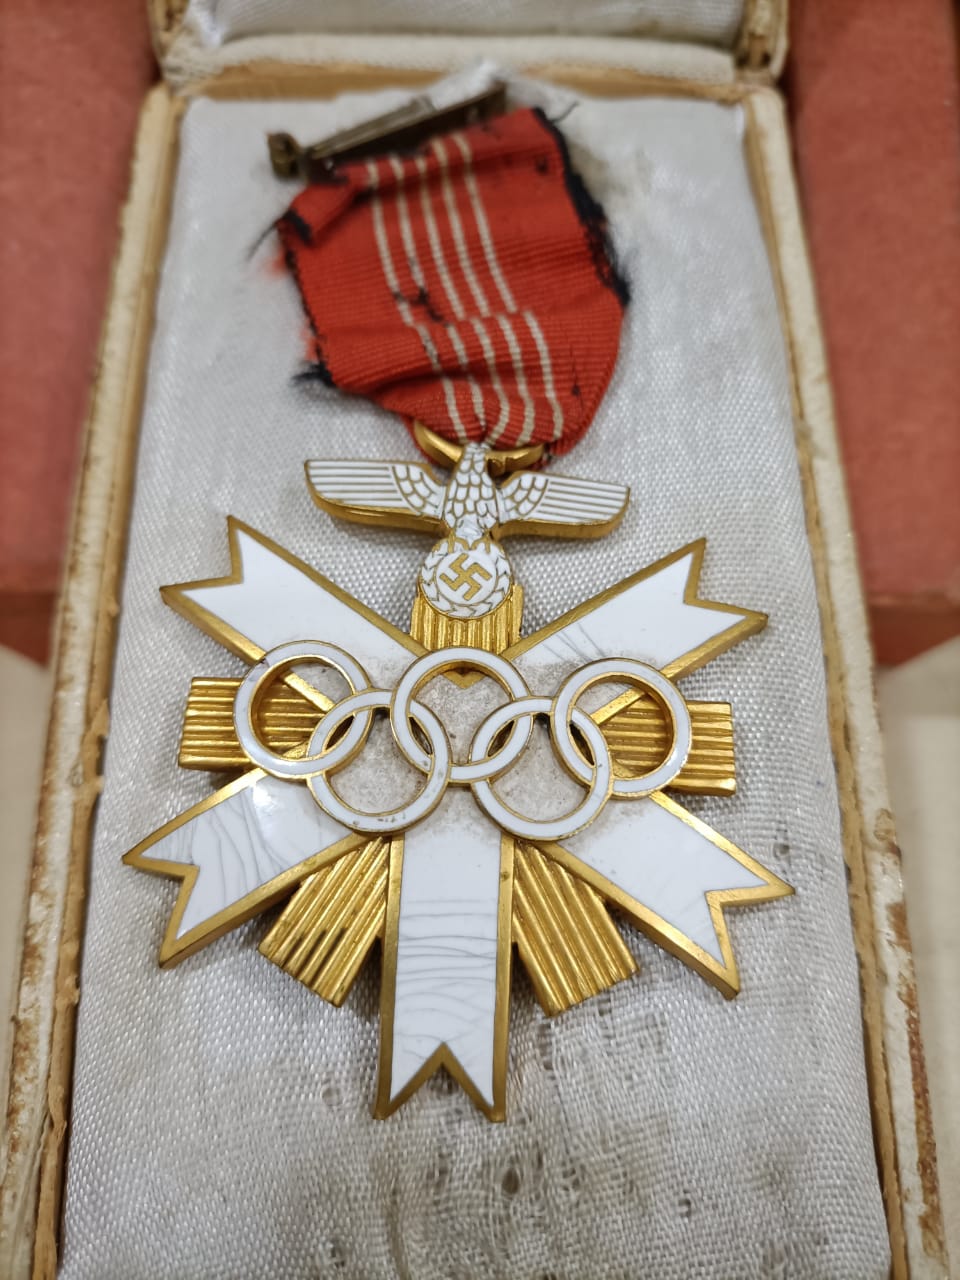 Olympic Medal : 1936 च्या जागतिक ऑलिम्पिकमधलं 'हिटलर मेडल' अमरावतीत